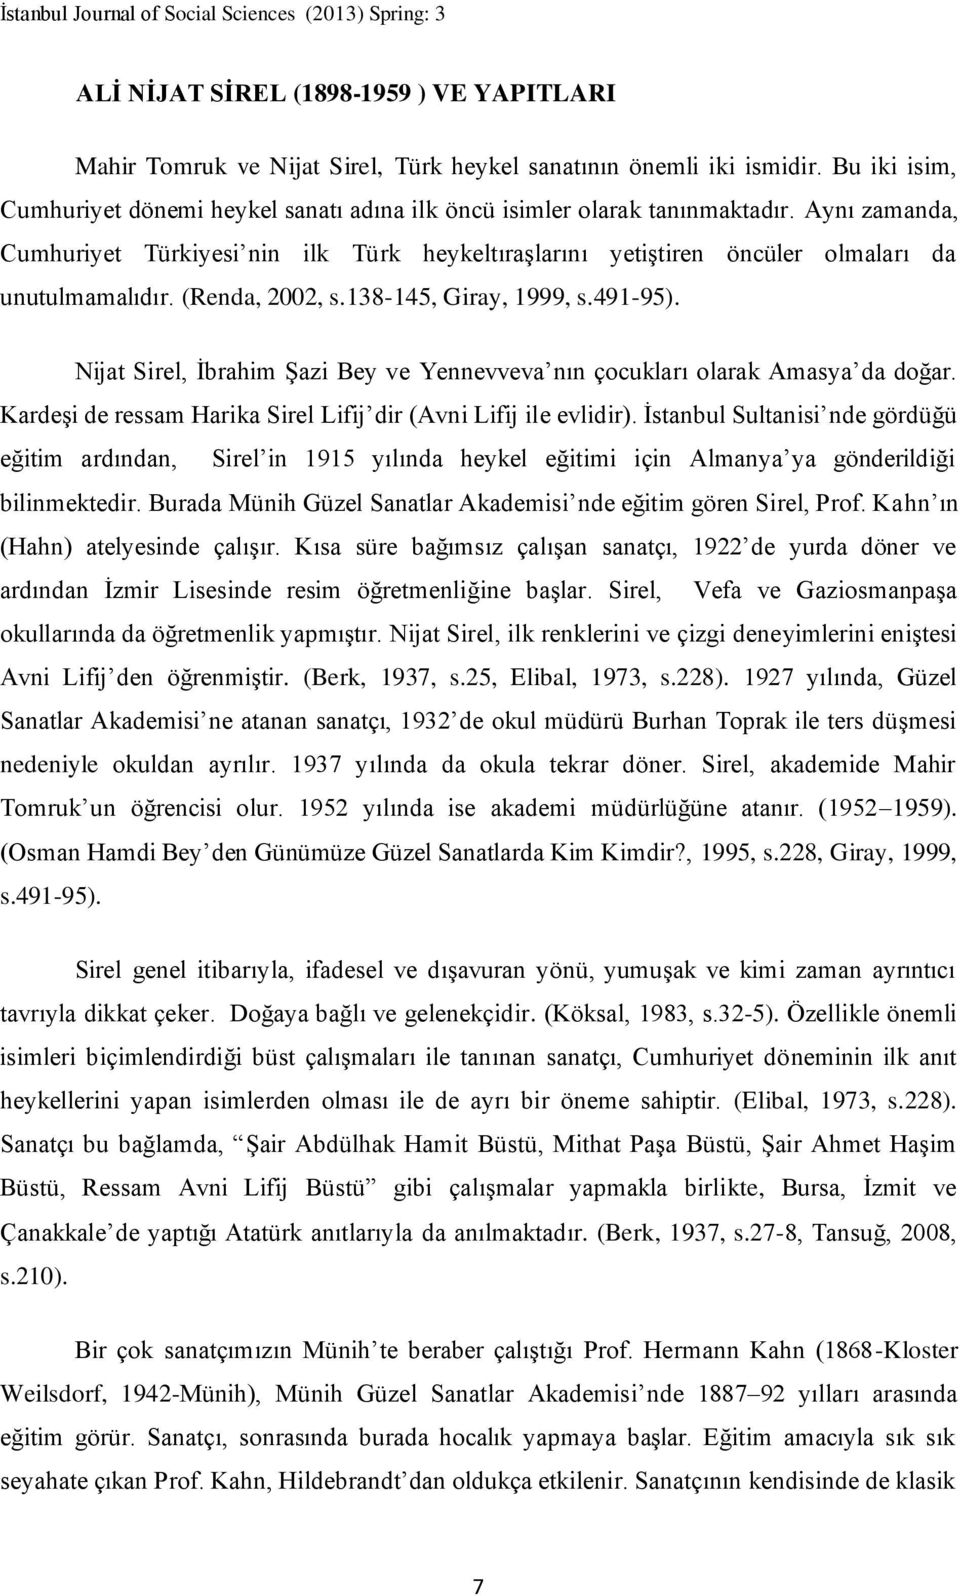 Aynı zamanda, Cumhuriyet Türkiyesi nin ilk Türk heykeltıraşlarını yetiştiren öncüler olmaları da unutulmamalıdır. (Renda, 2002, s.138-145, Giray, 1999, s.491-95).